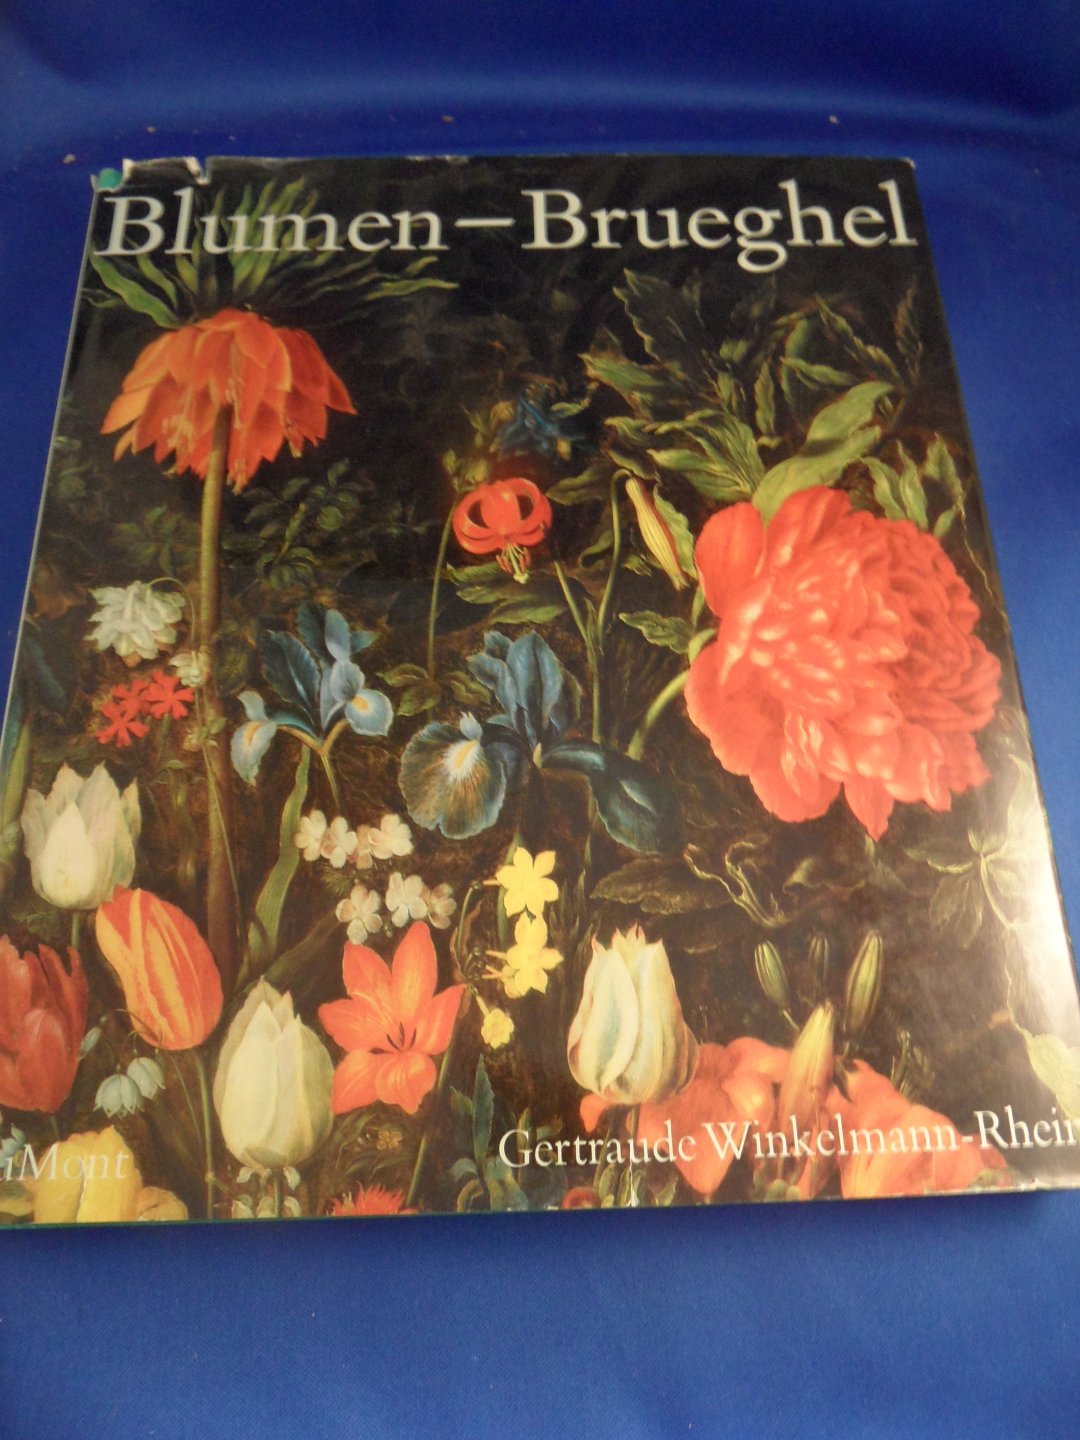 Winkelmann Rhein, Gertrude - Blumen Brueghel